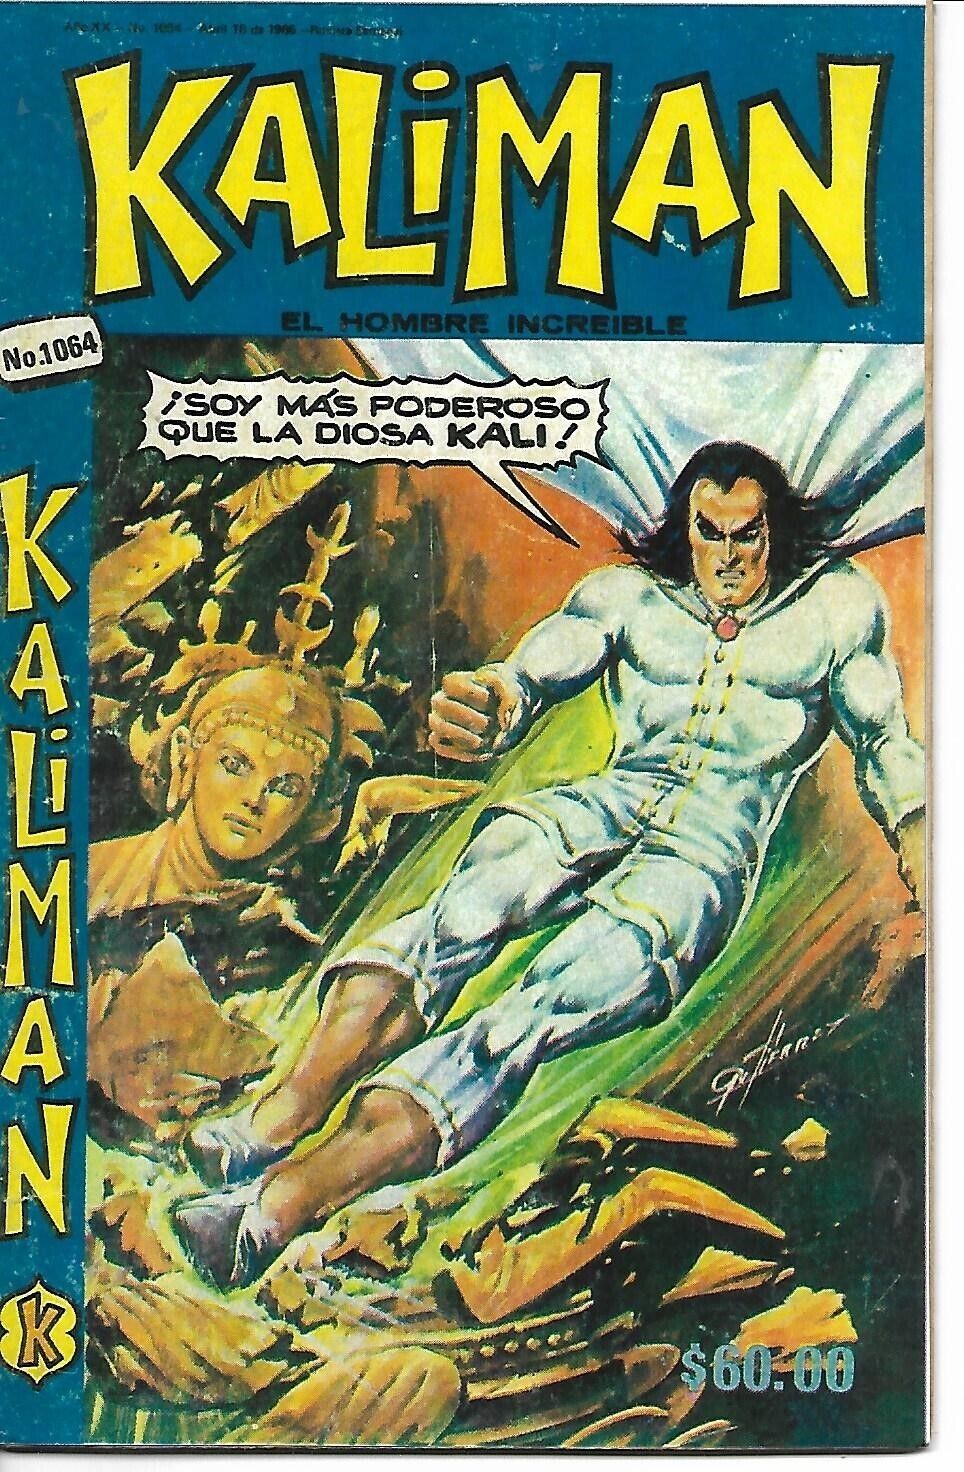 Kaliman El Hombre Increible #1064 - Abril 18, 1986